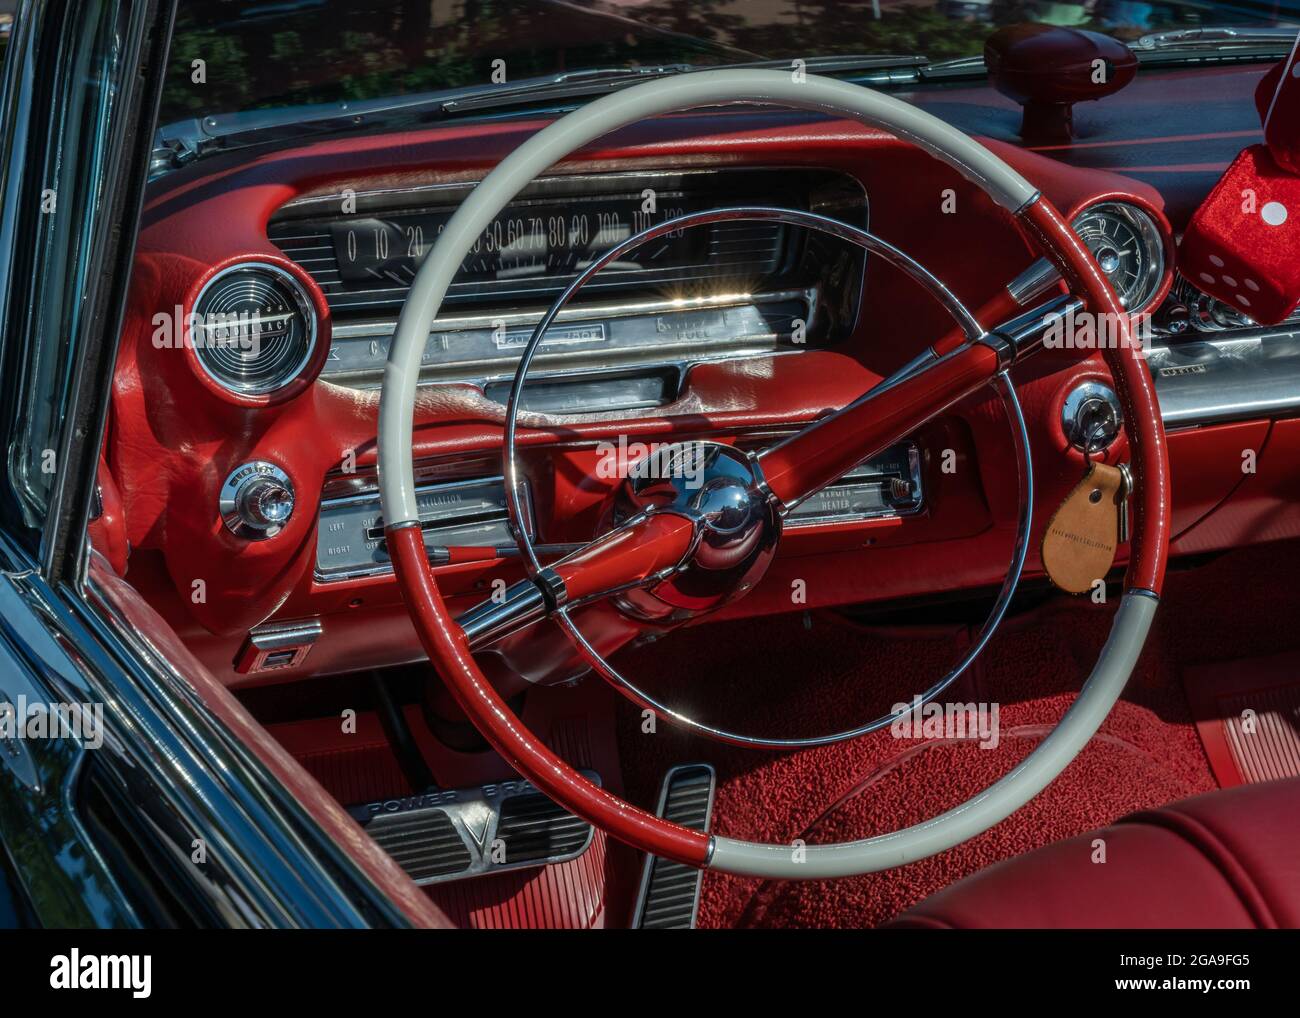 PLYMOUTH, MI/USA - 26. JULI 2021: Nahaufnahme eines Cadillac Eldorado-Armaturenbretts aus dem Jahr 1959 auf der Automobilausstellung Concours d'Elegance of America im Inn at St. John's. Stockfoto